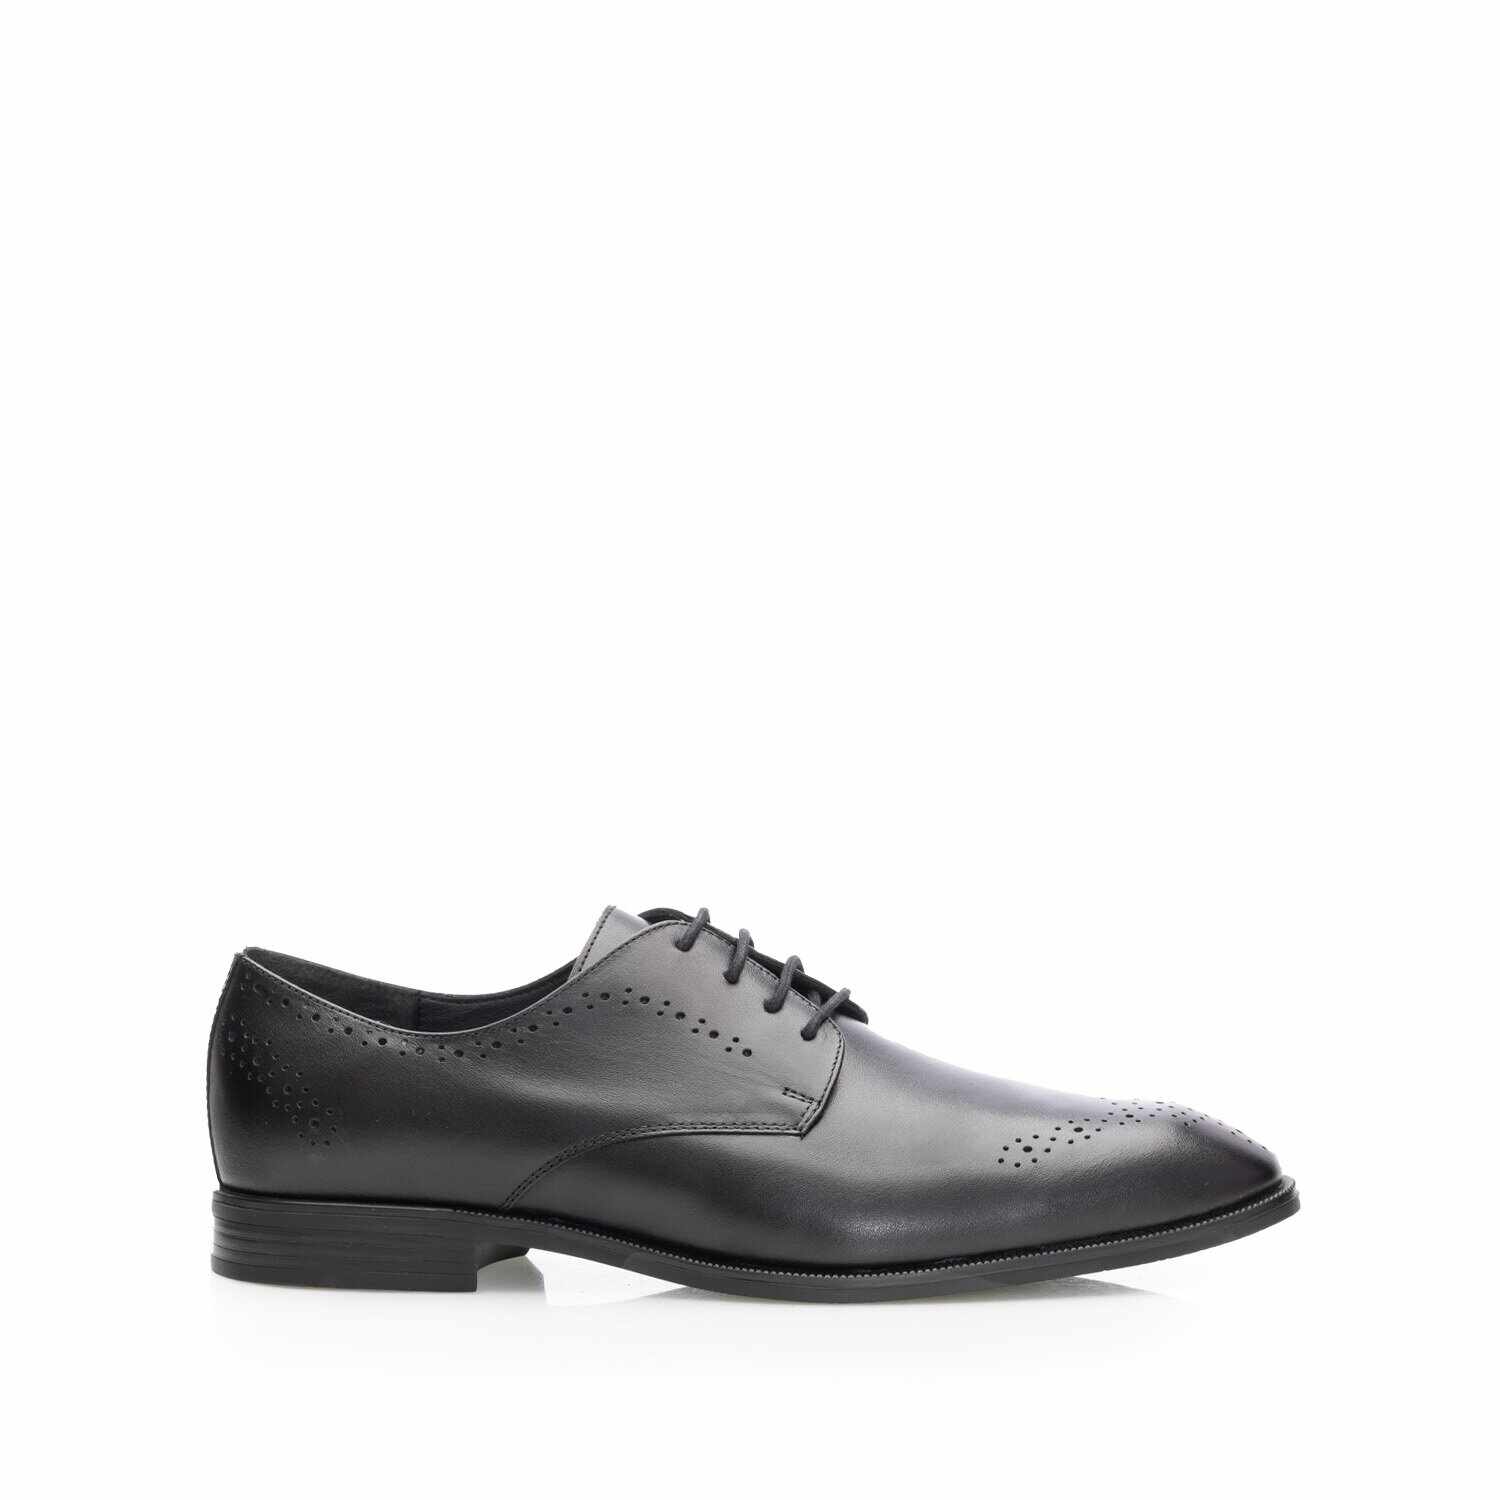 Pantofi eleganţi bărbaţi din piele naturală, Leofex - 662 Negru Box